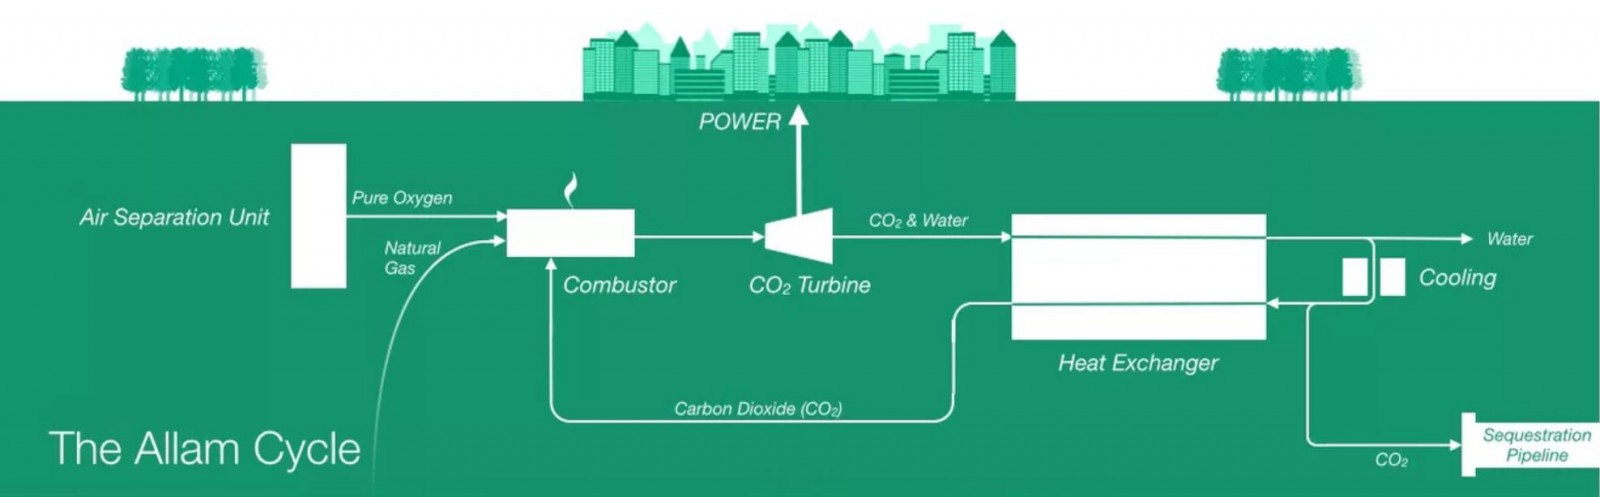 planta de gas natural no emite carbono